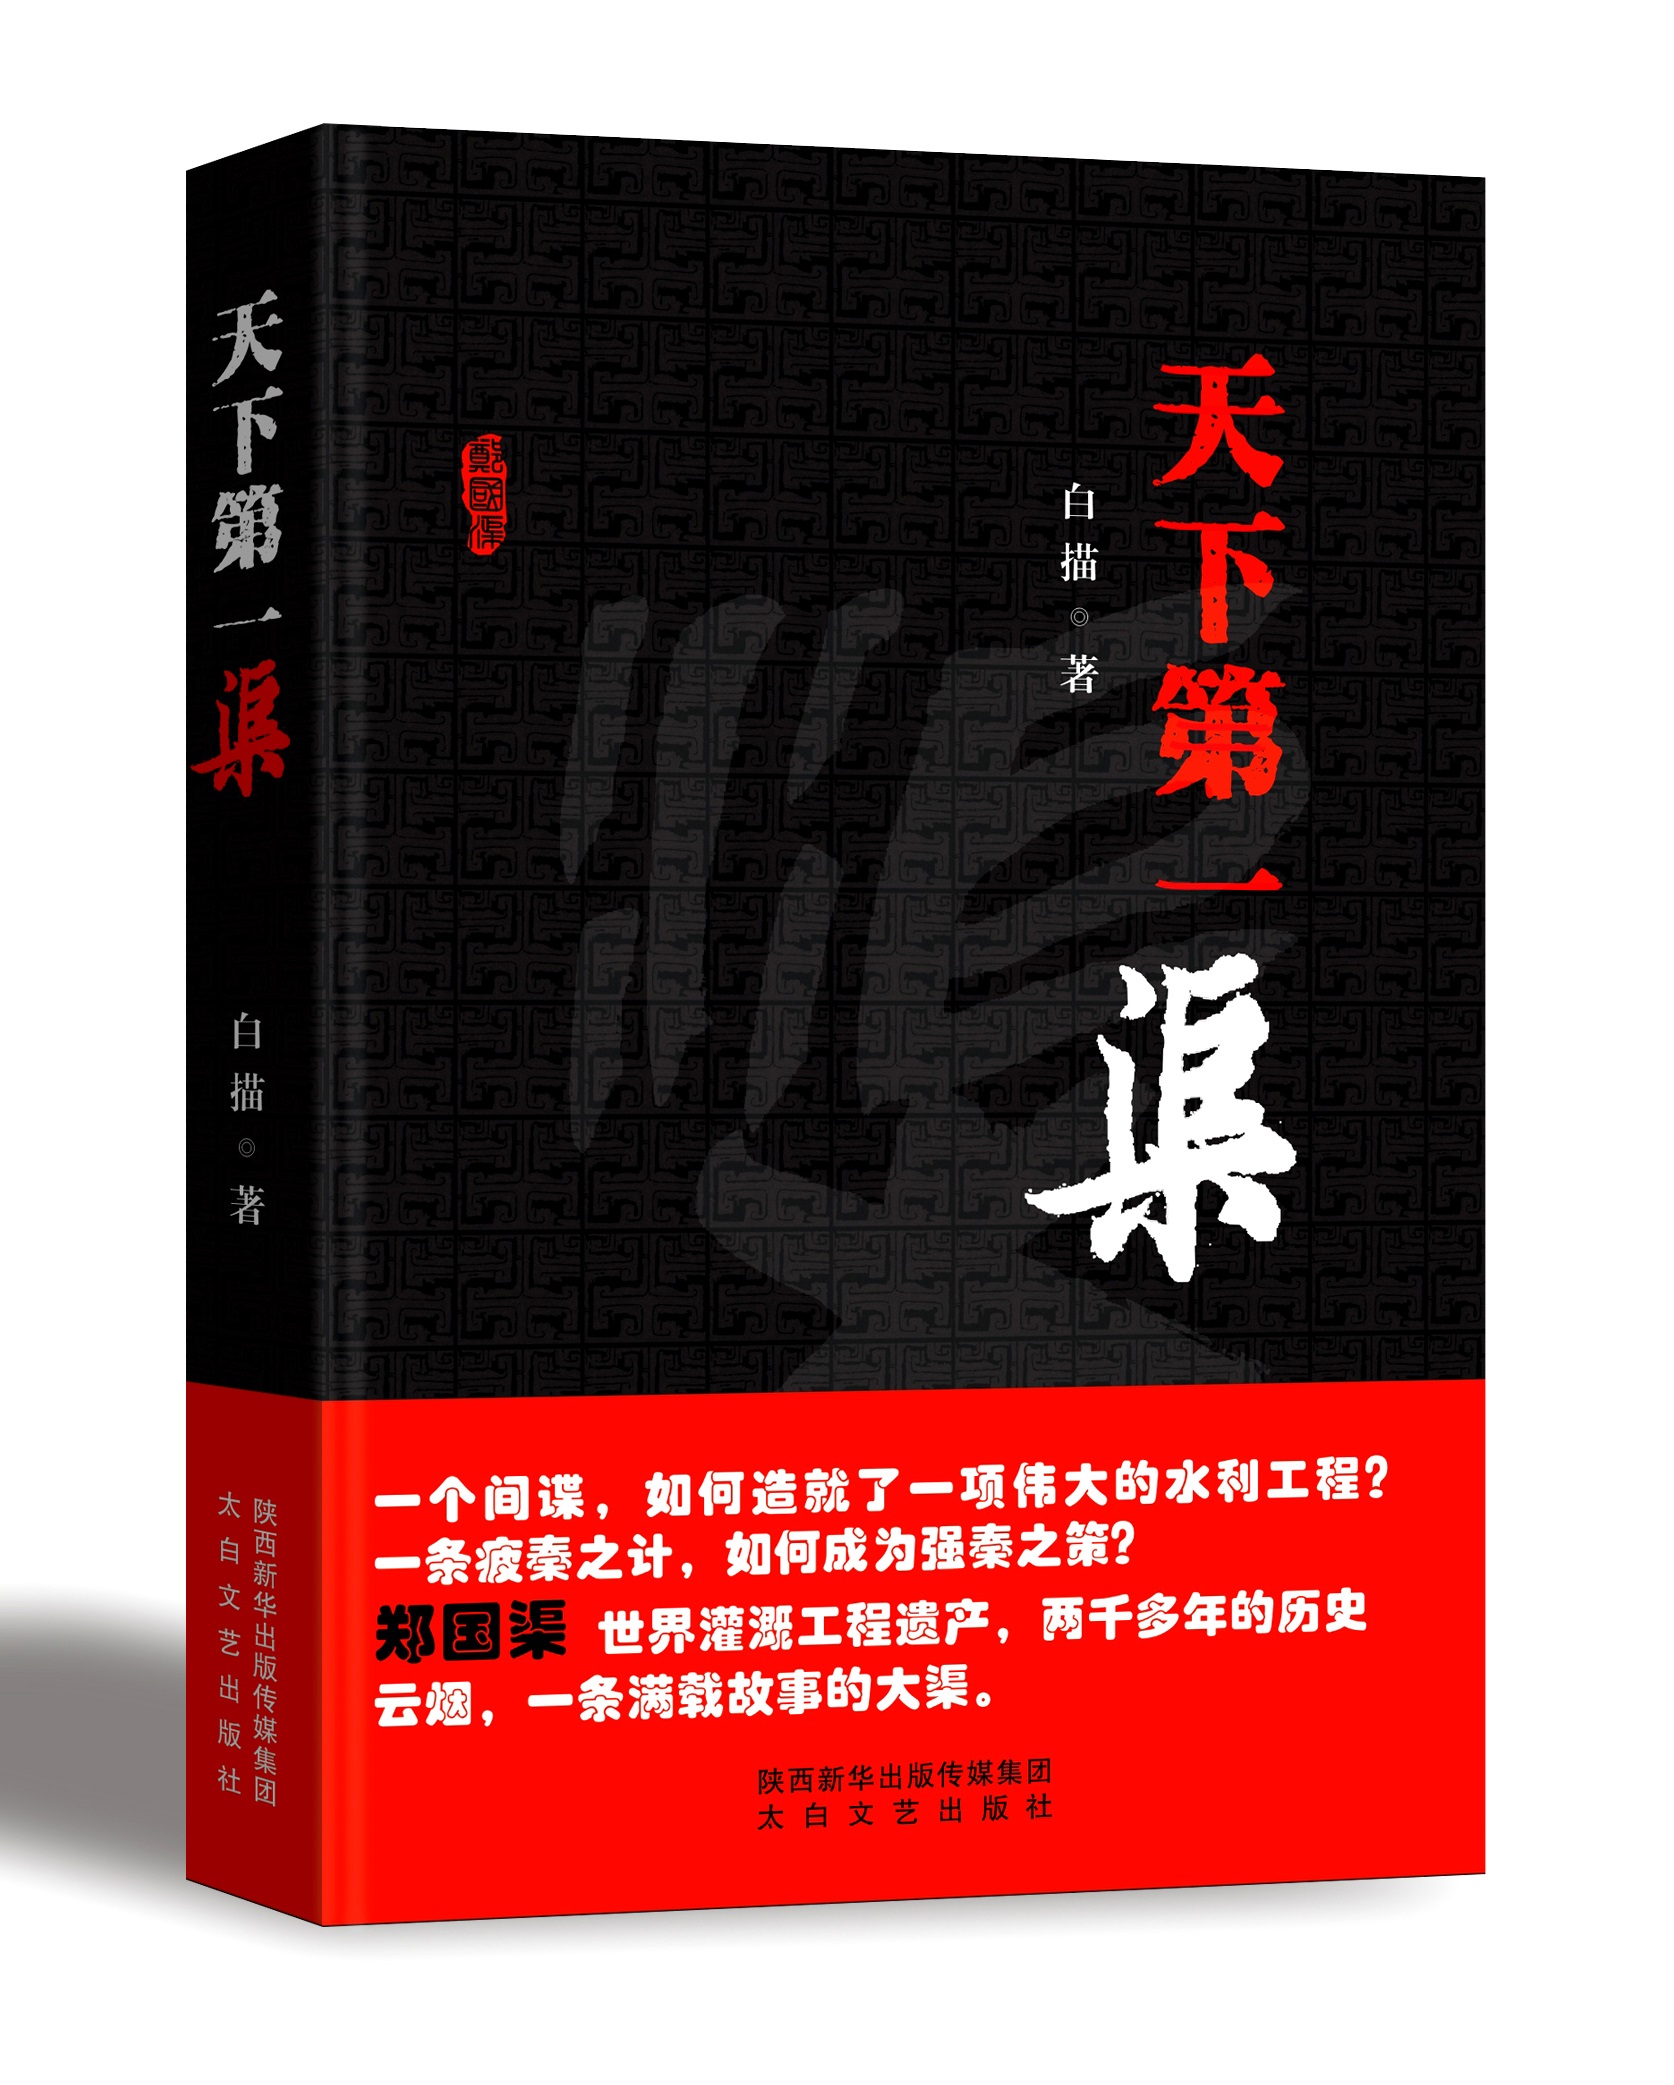 《天下第一渠》由陕西新华出版传媒集团 太白文艺出版社出版发行.jpg